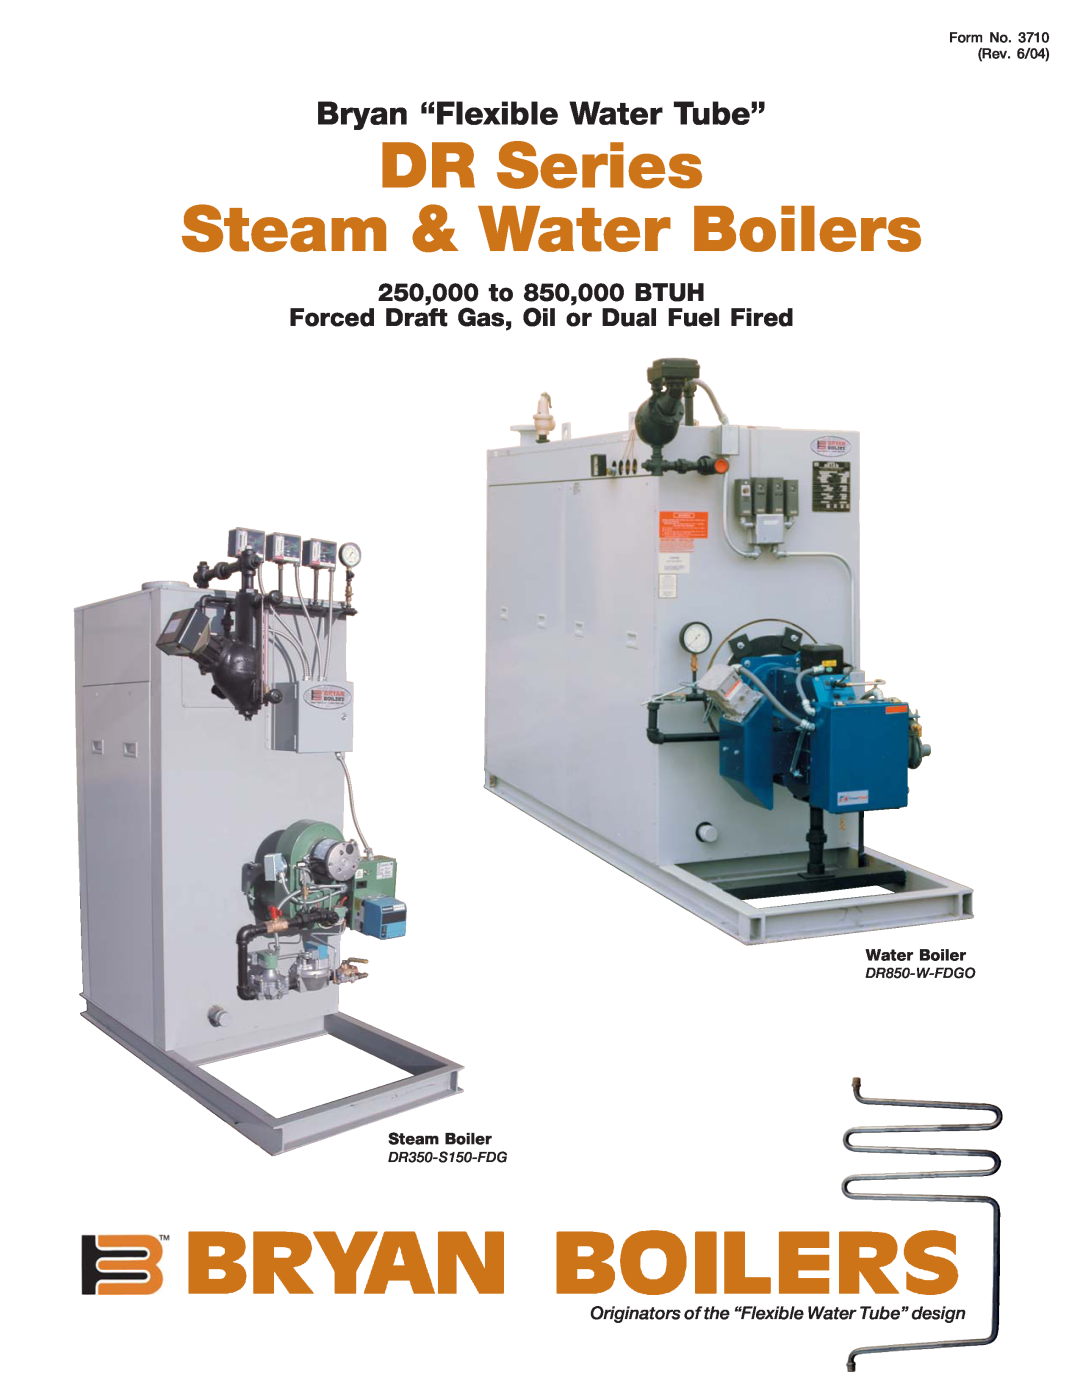 Bryan Boilers DR850-W-FDGO manual DR Series Steam & Water Boilers, Bryan “Flexible Water Tube”, Steam Boiler 